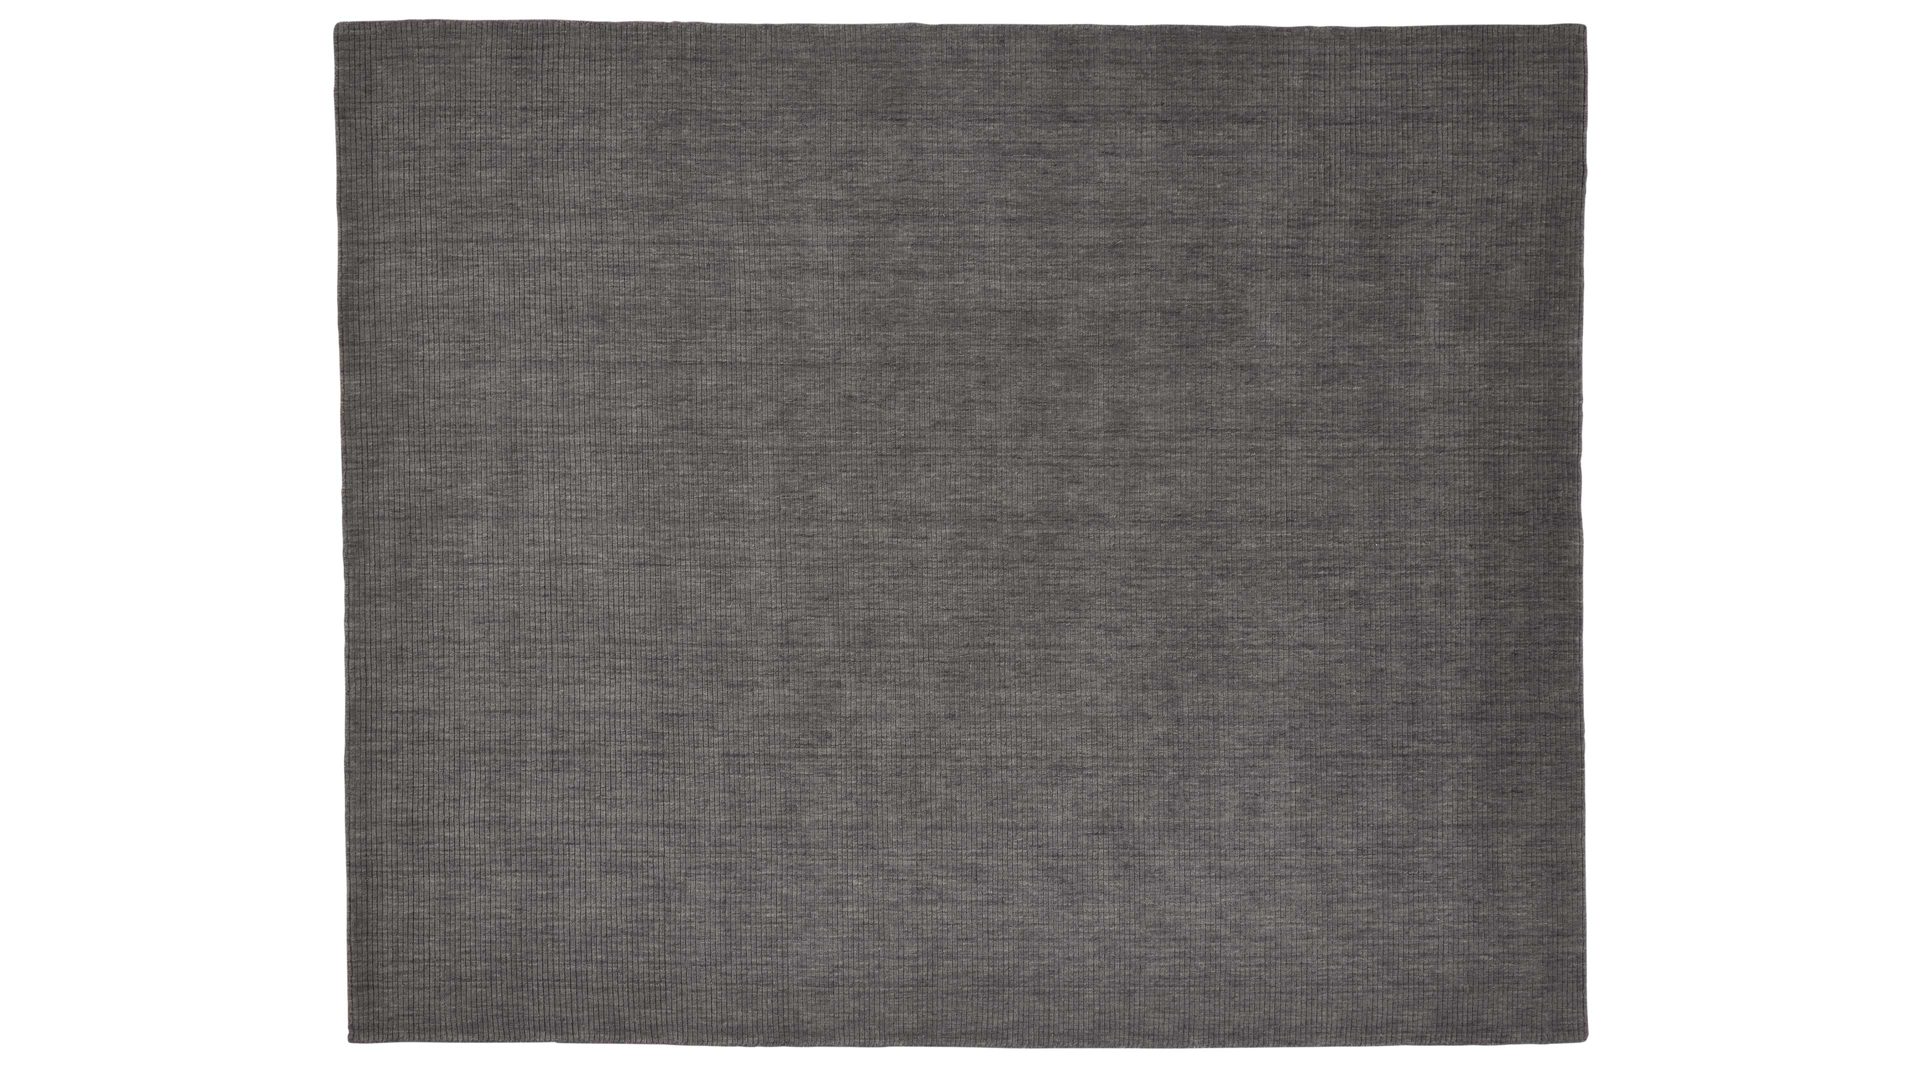 Handwebteppich Interliving aus Naturfaser in Grau Interliving Teppich Serie R-8120 Grau - ca. 90 x 160 cm